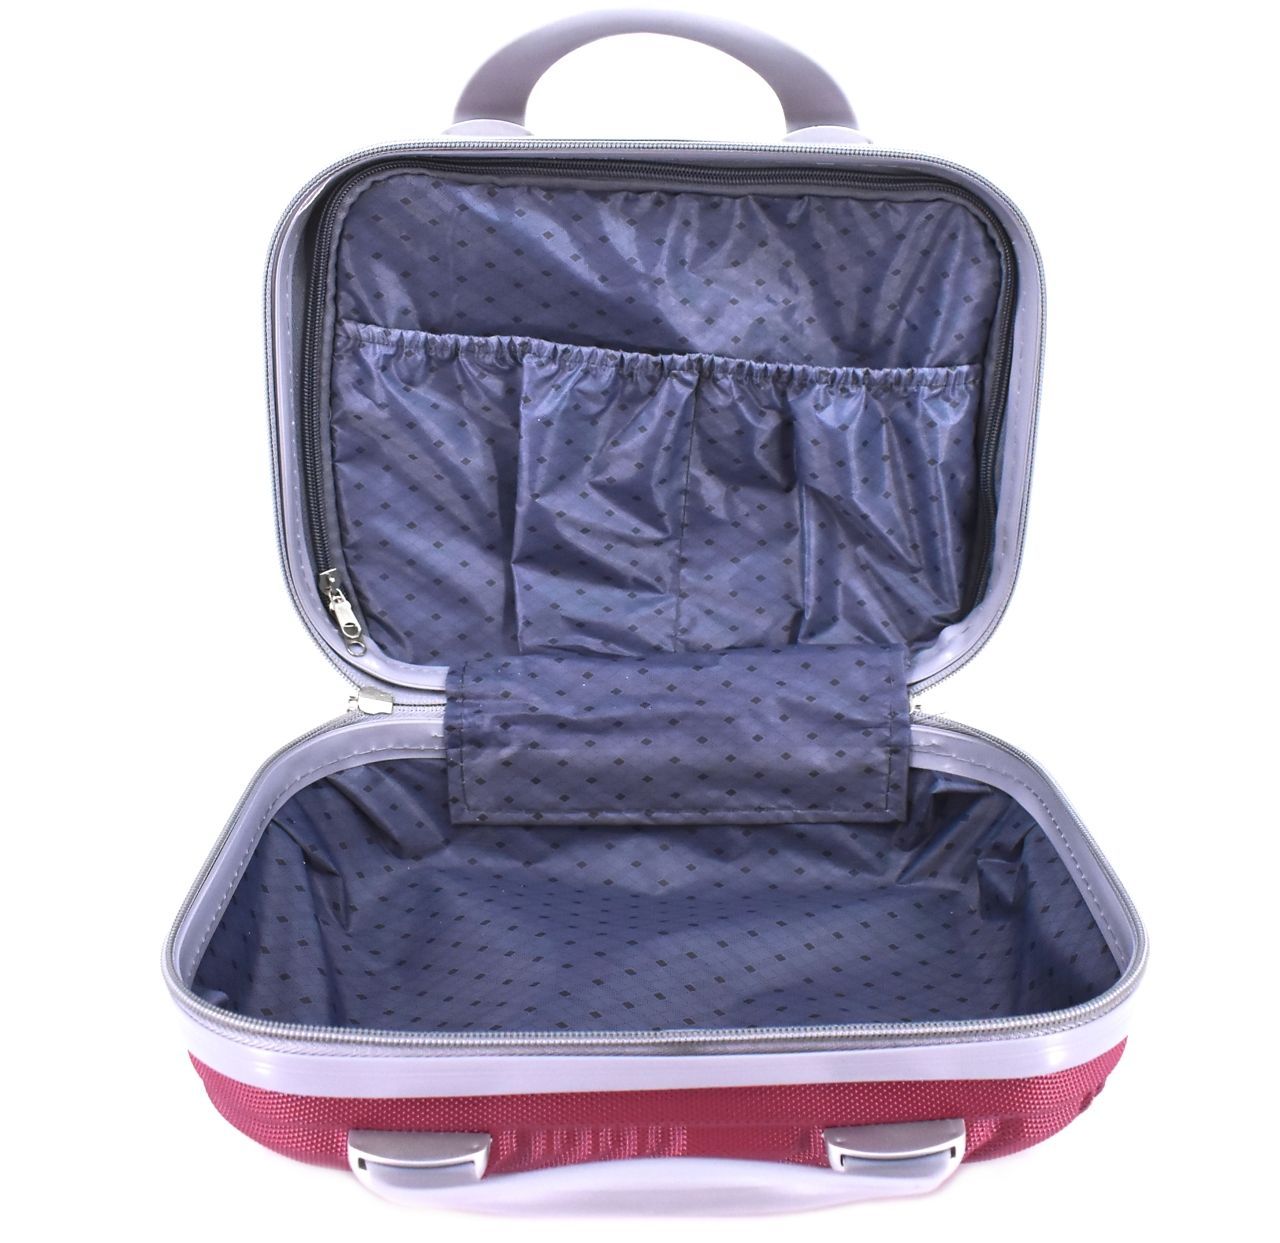 Kosmetický palubní příruční kufr Arteddy malý - modrá 6022 malý